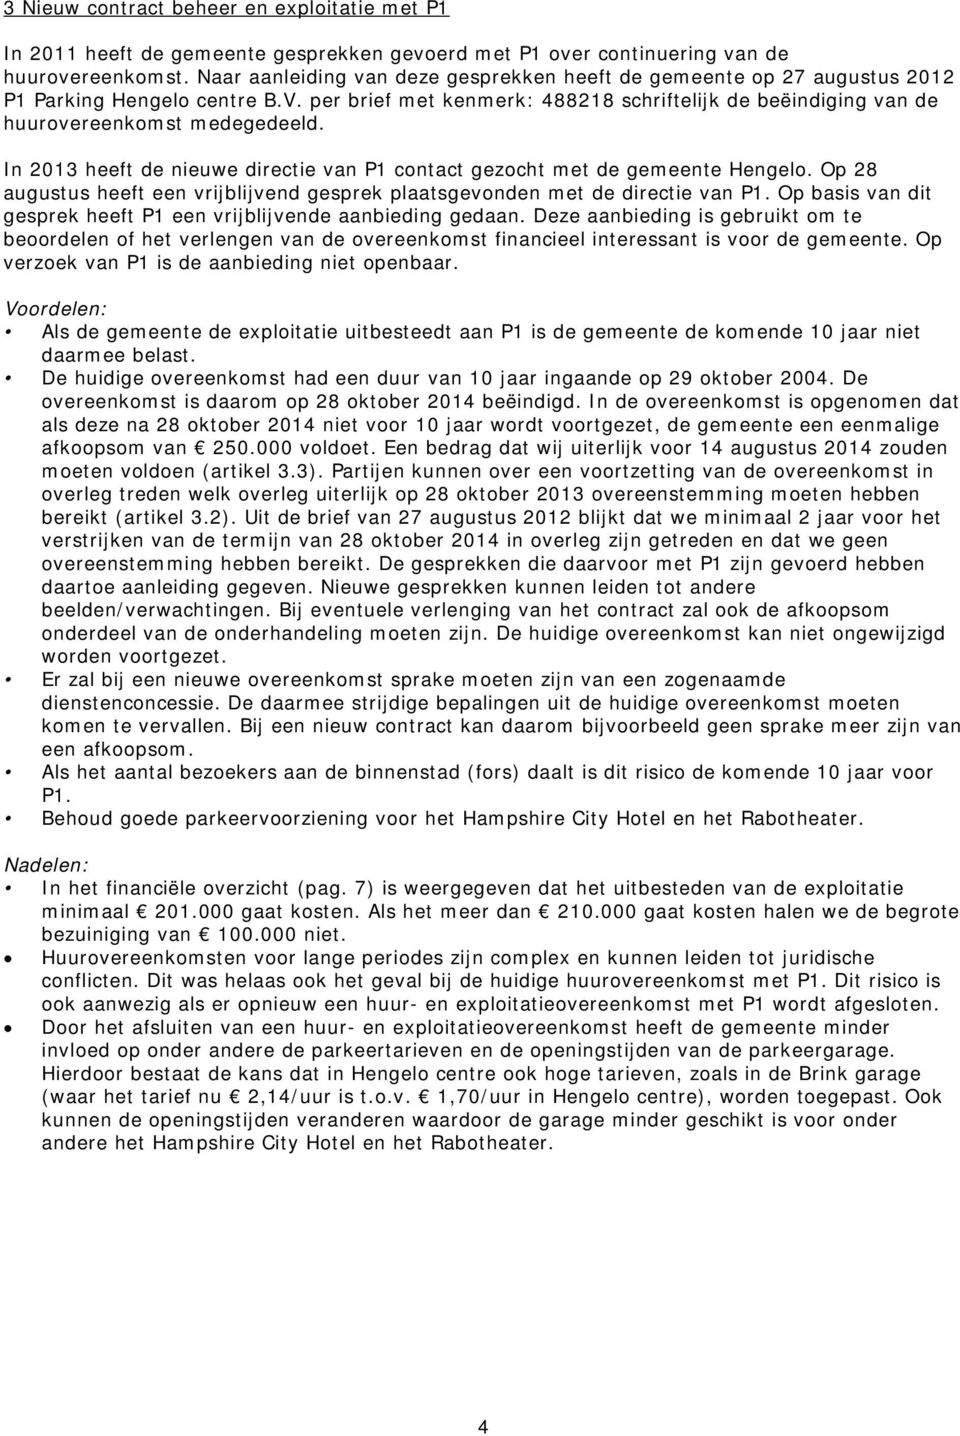 In 2013 heeft de nieuwe directie van P1 contact gezocht met de gemeente Hengelo. Op 28 augustus heeft een vrijblijvend gesprek plaatsgevonden met de directie van P1.